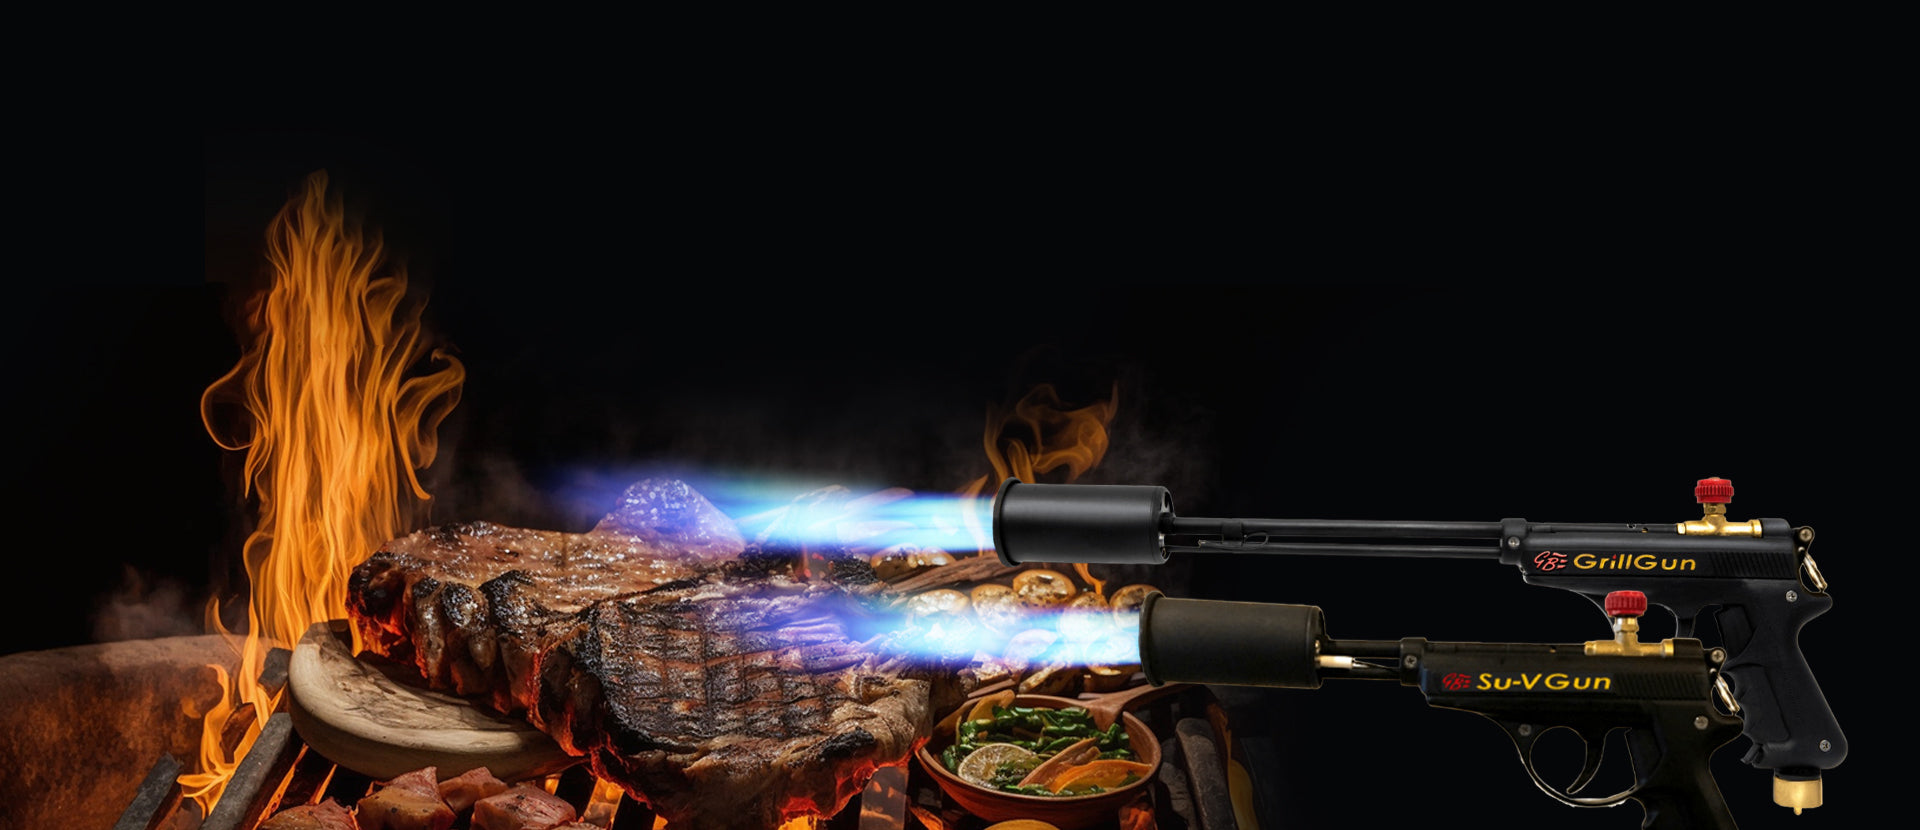 Powerful Cooking Propane Torch - Fire Gun Grill Gun, Charcoal Lighter  Campfire S